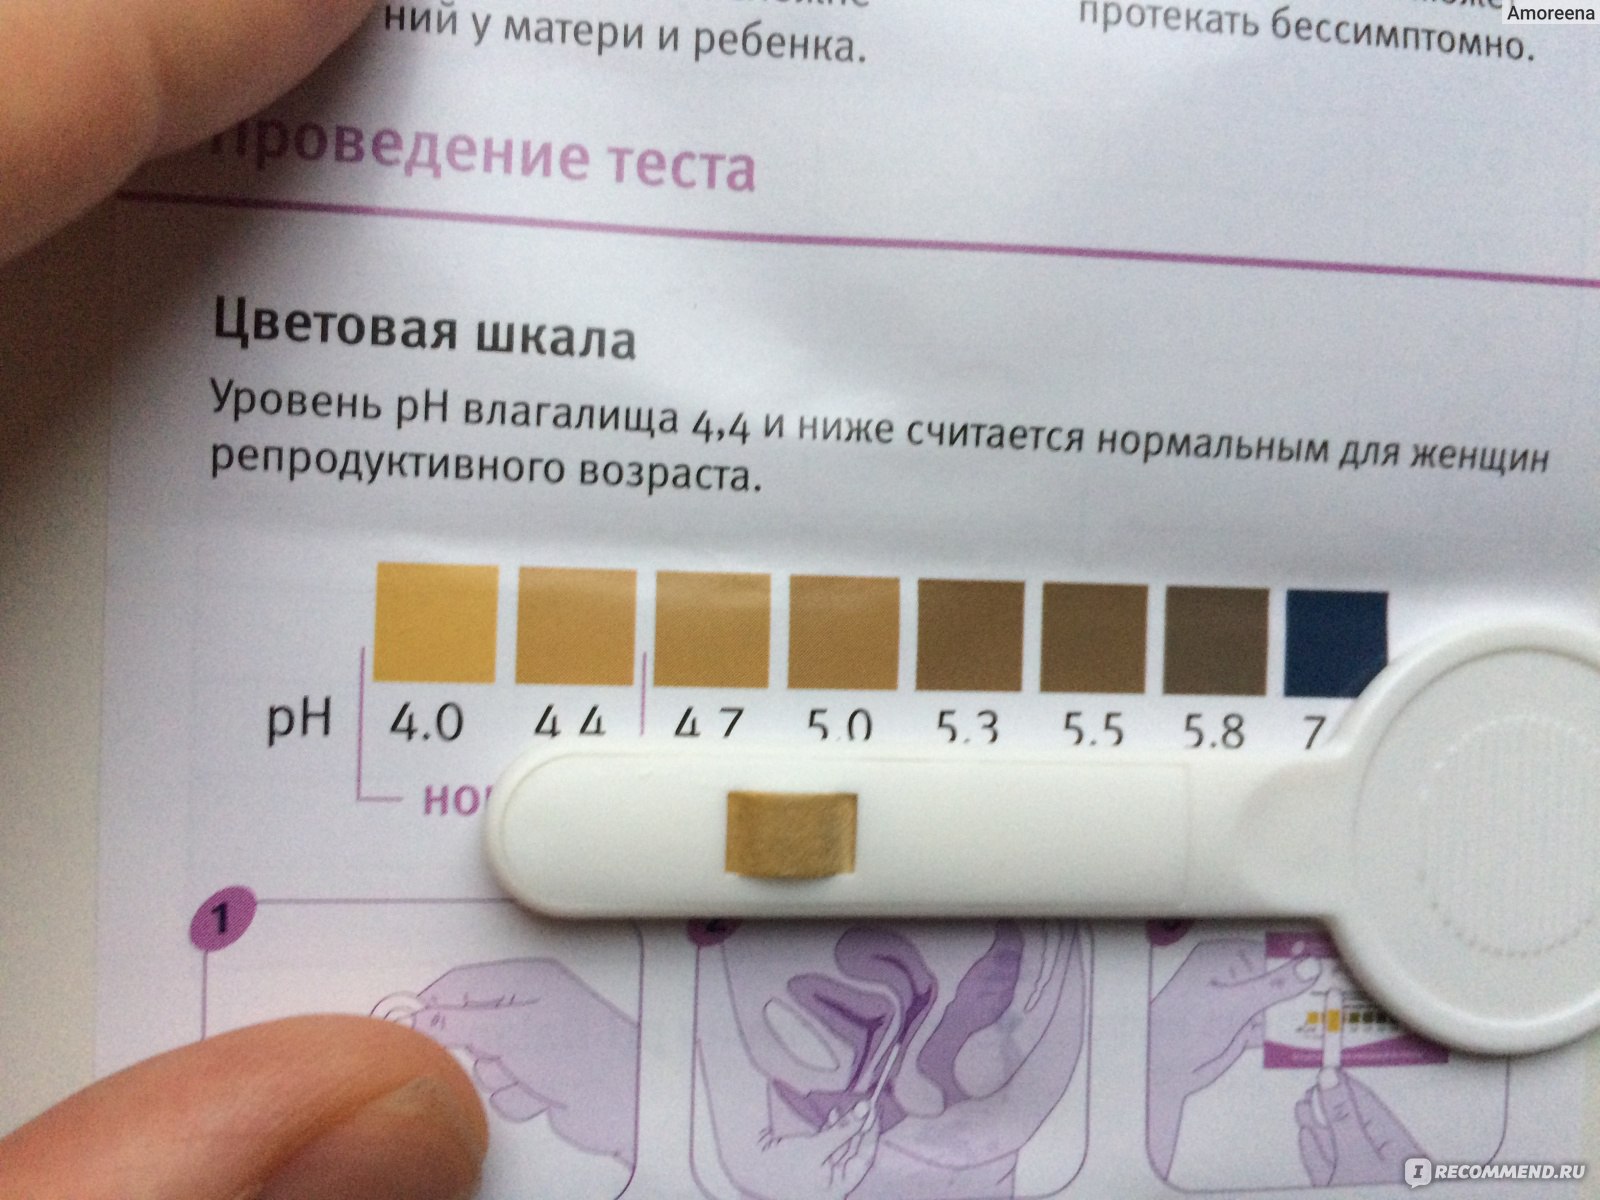 Определение pH вагинальной среды - измерение ph влагалища в Одессе